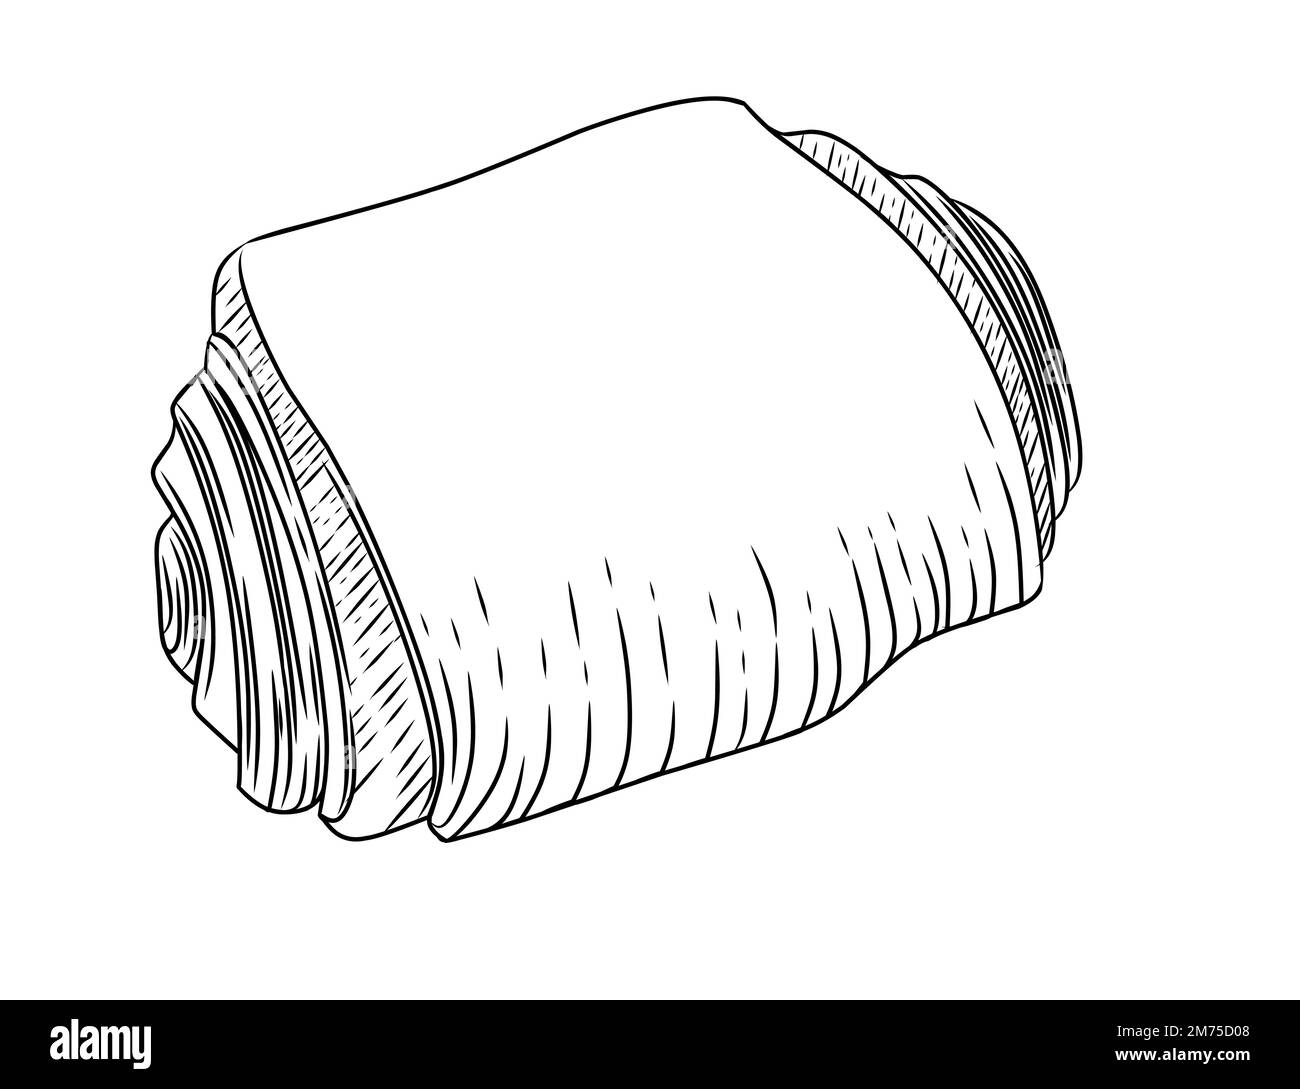 Illustration vectorielle de style pain de graines de pavot fraîches et savoureuses, isolée sur fond blanc Illustration de Vecteur